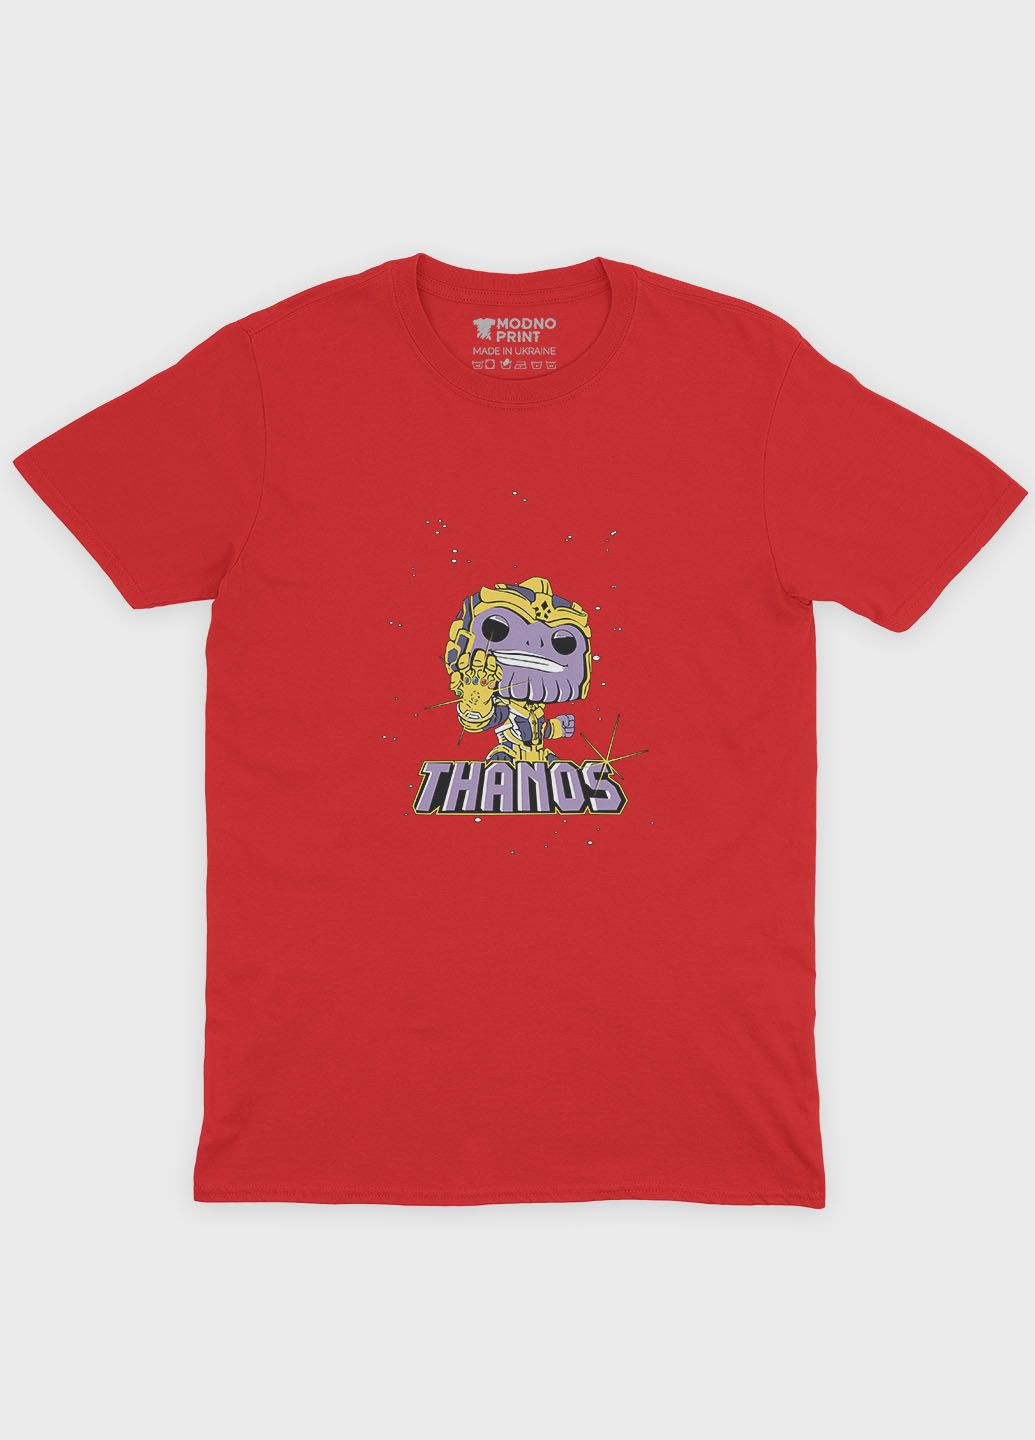 Червона демісезонна футболка для хлопчика з принтом супезлодія - танос (ts001-1-sre-006-019-007-b) Modno